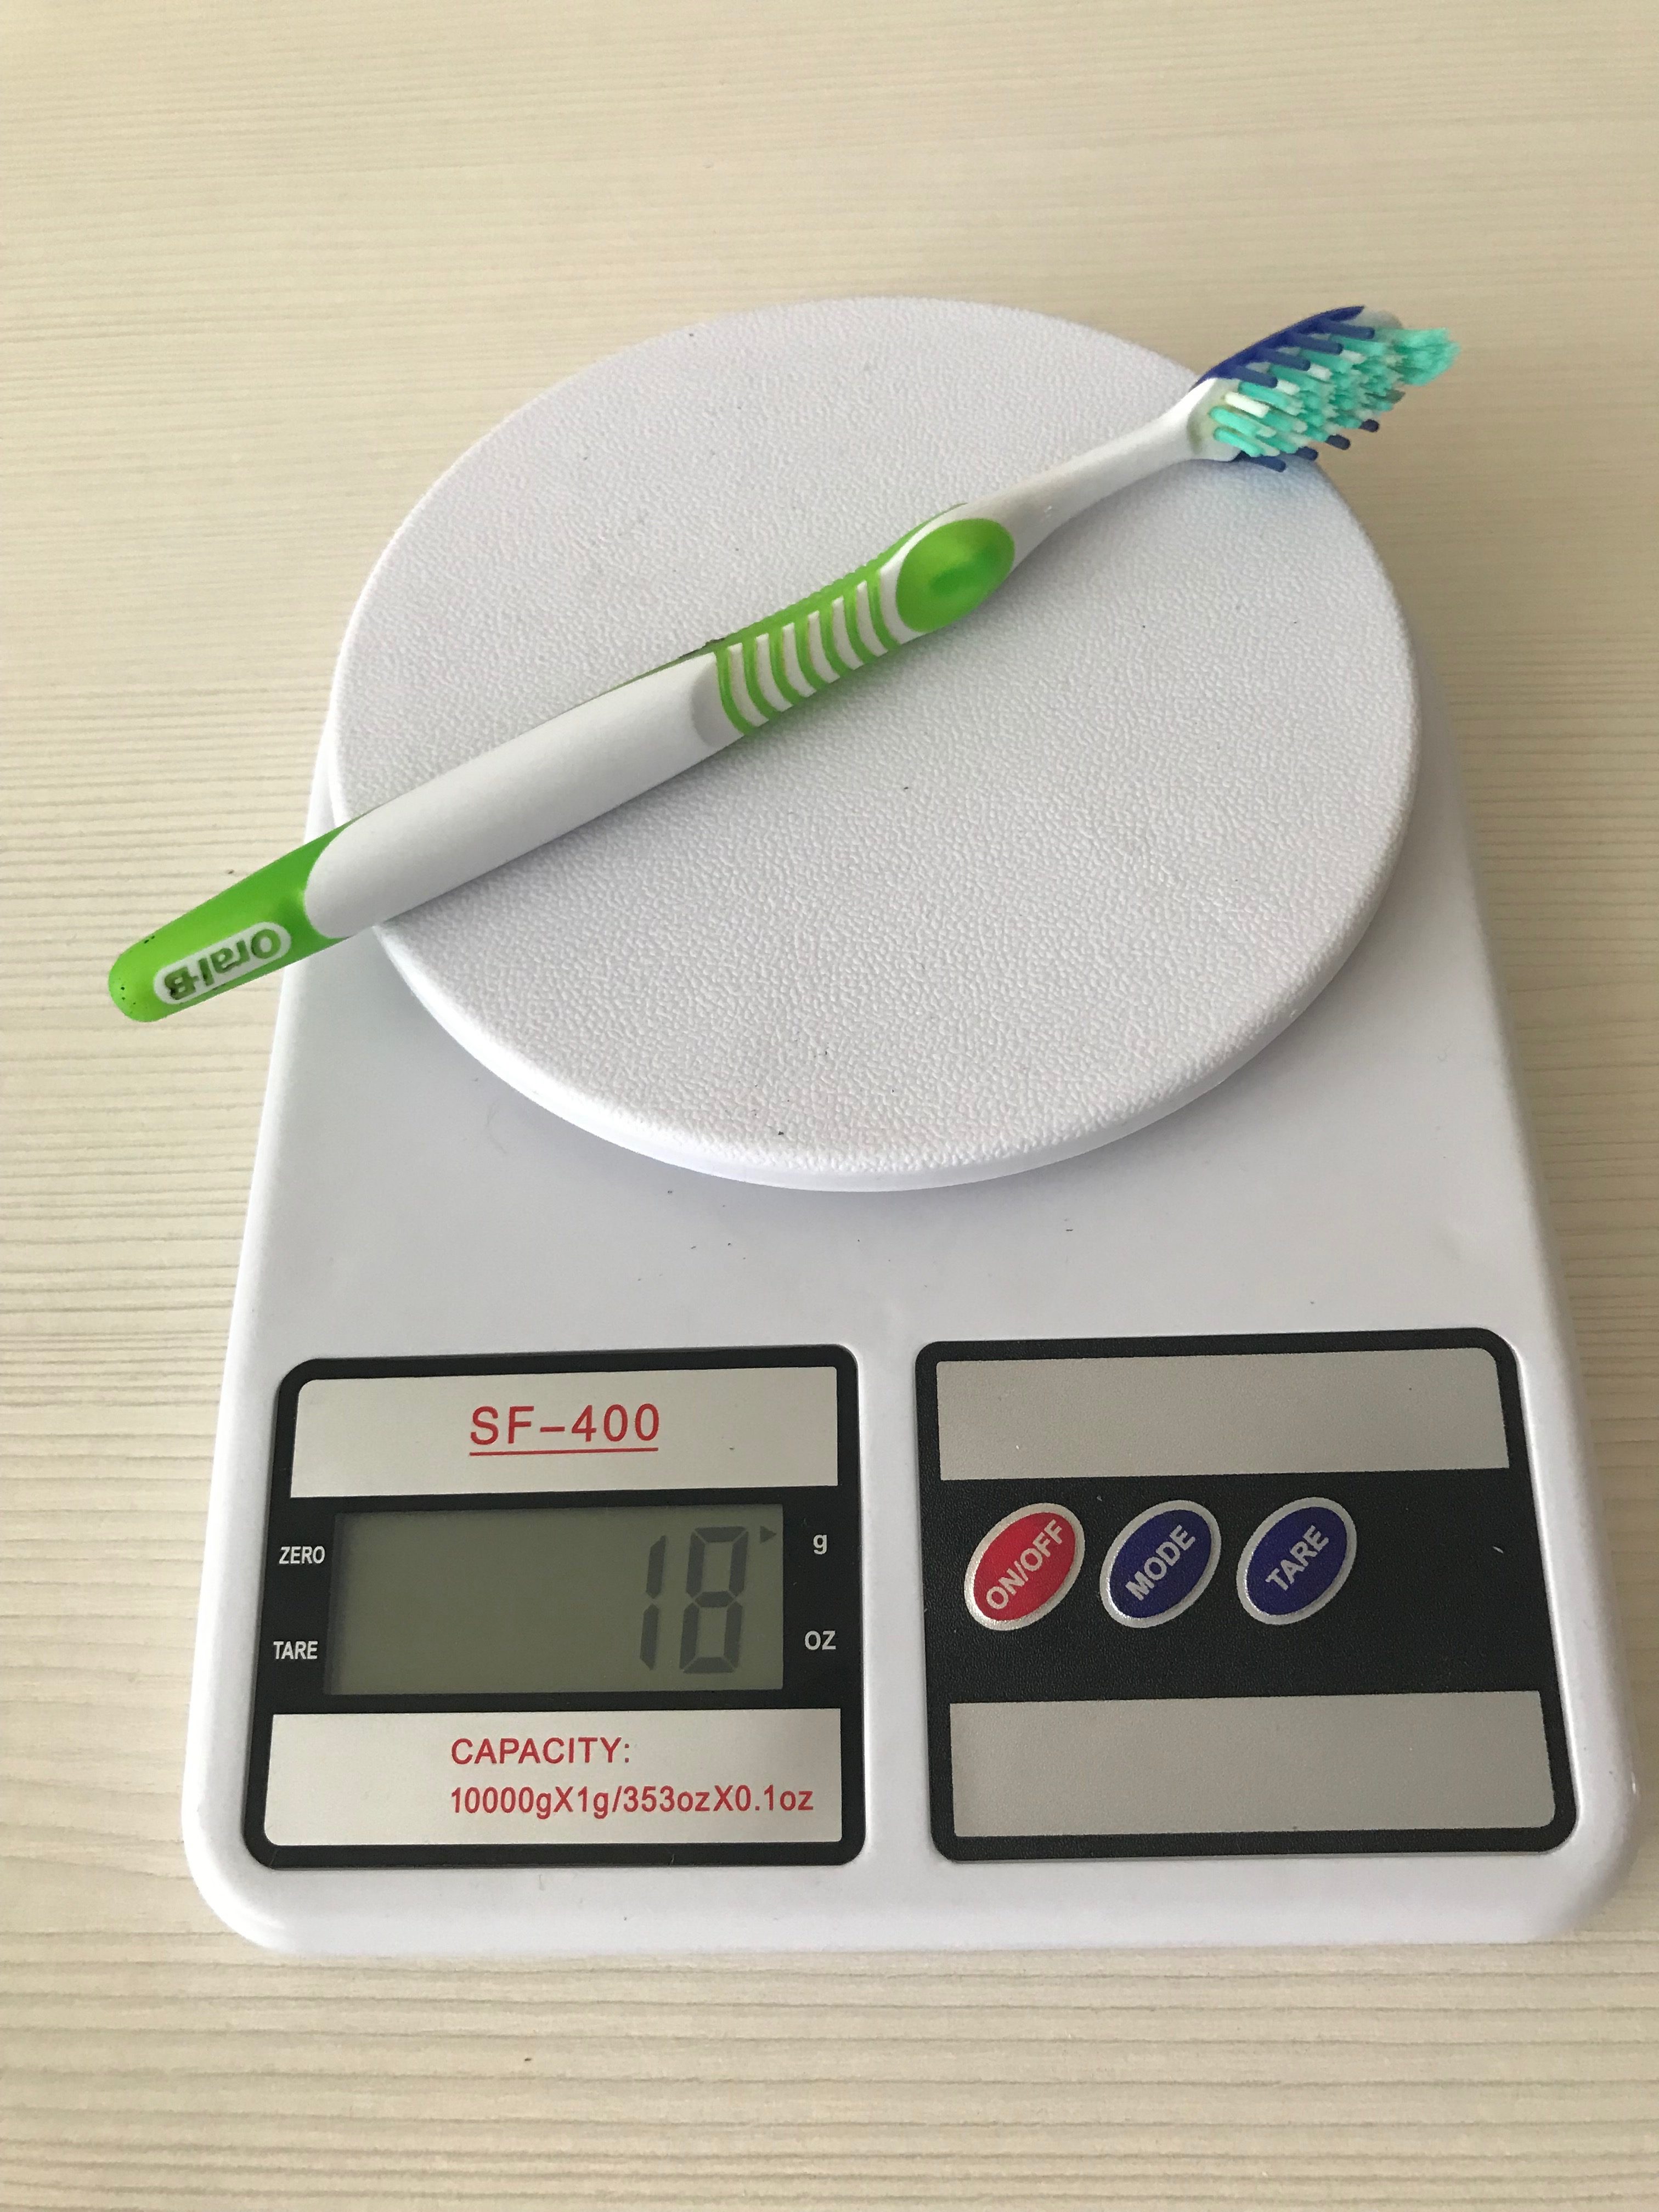 Bir diş fırçasının ağırlığı ne kadardır?